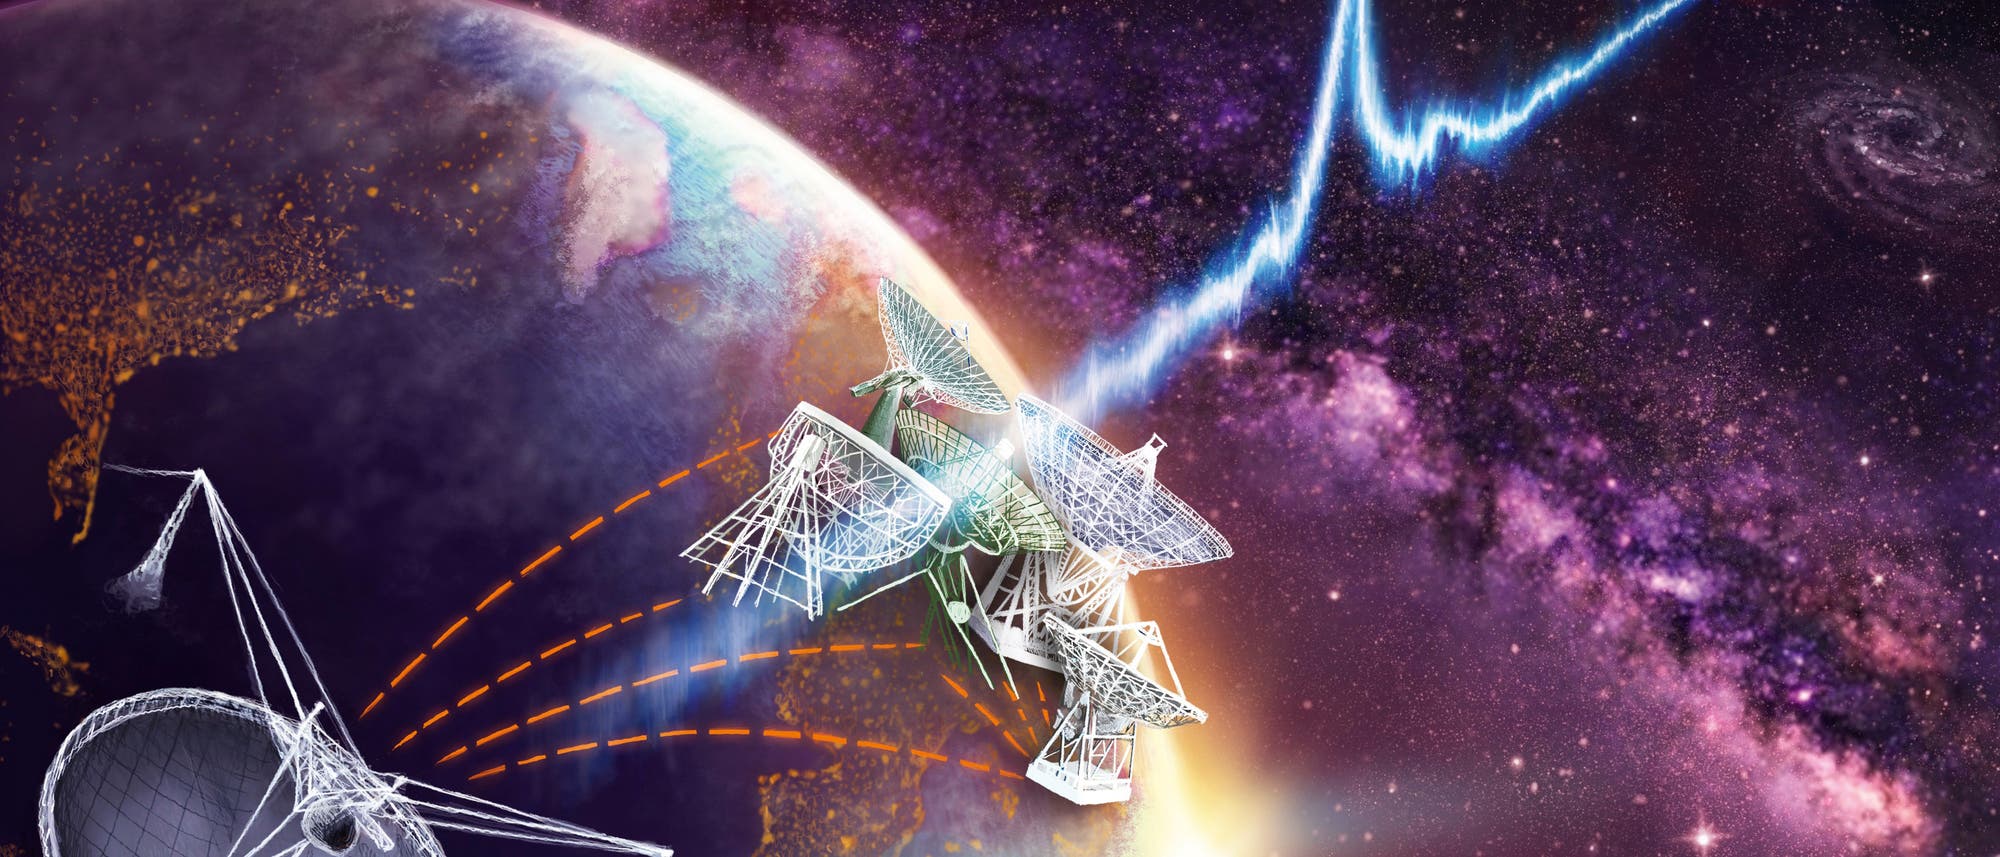 Bestimmung eines Radioblitzes mit Hilfe der Radioantennen des europäischen Very-­Large-Baseline-Netzwerks, deren größte die 100-Meter-Antenne in Effelsberg bei Bonn ist, in Kombination mit dem 300-Meter-Radioteleskop bei Arecibo auf Puerto Rico.